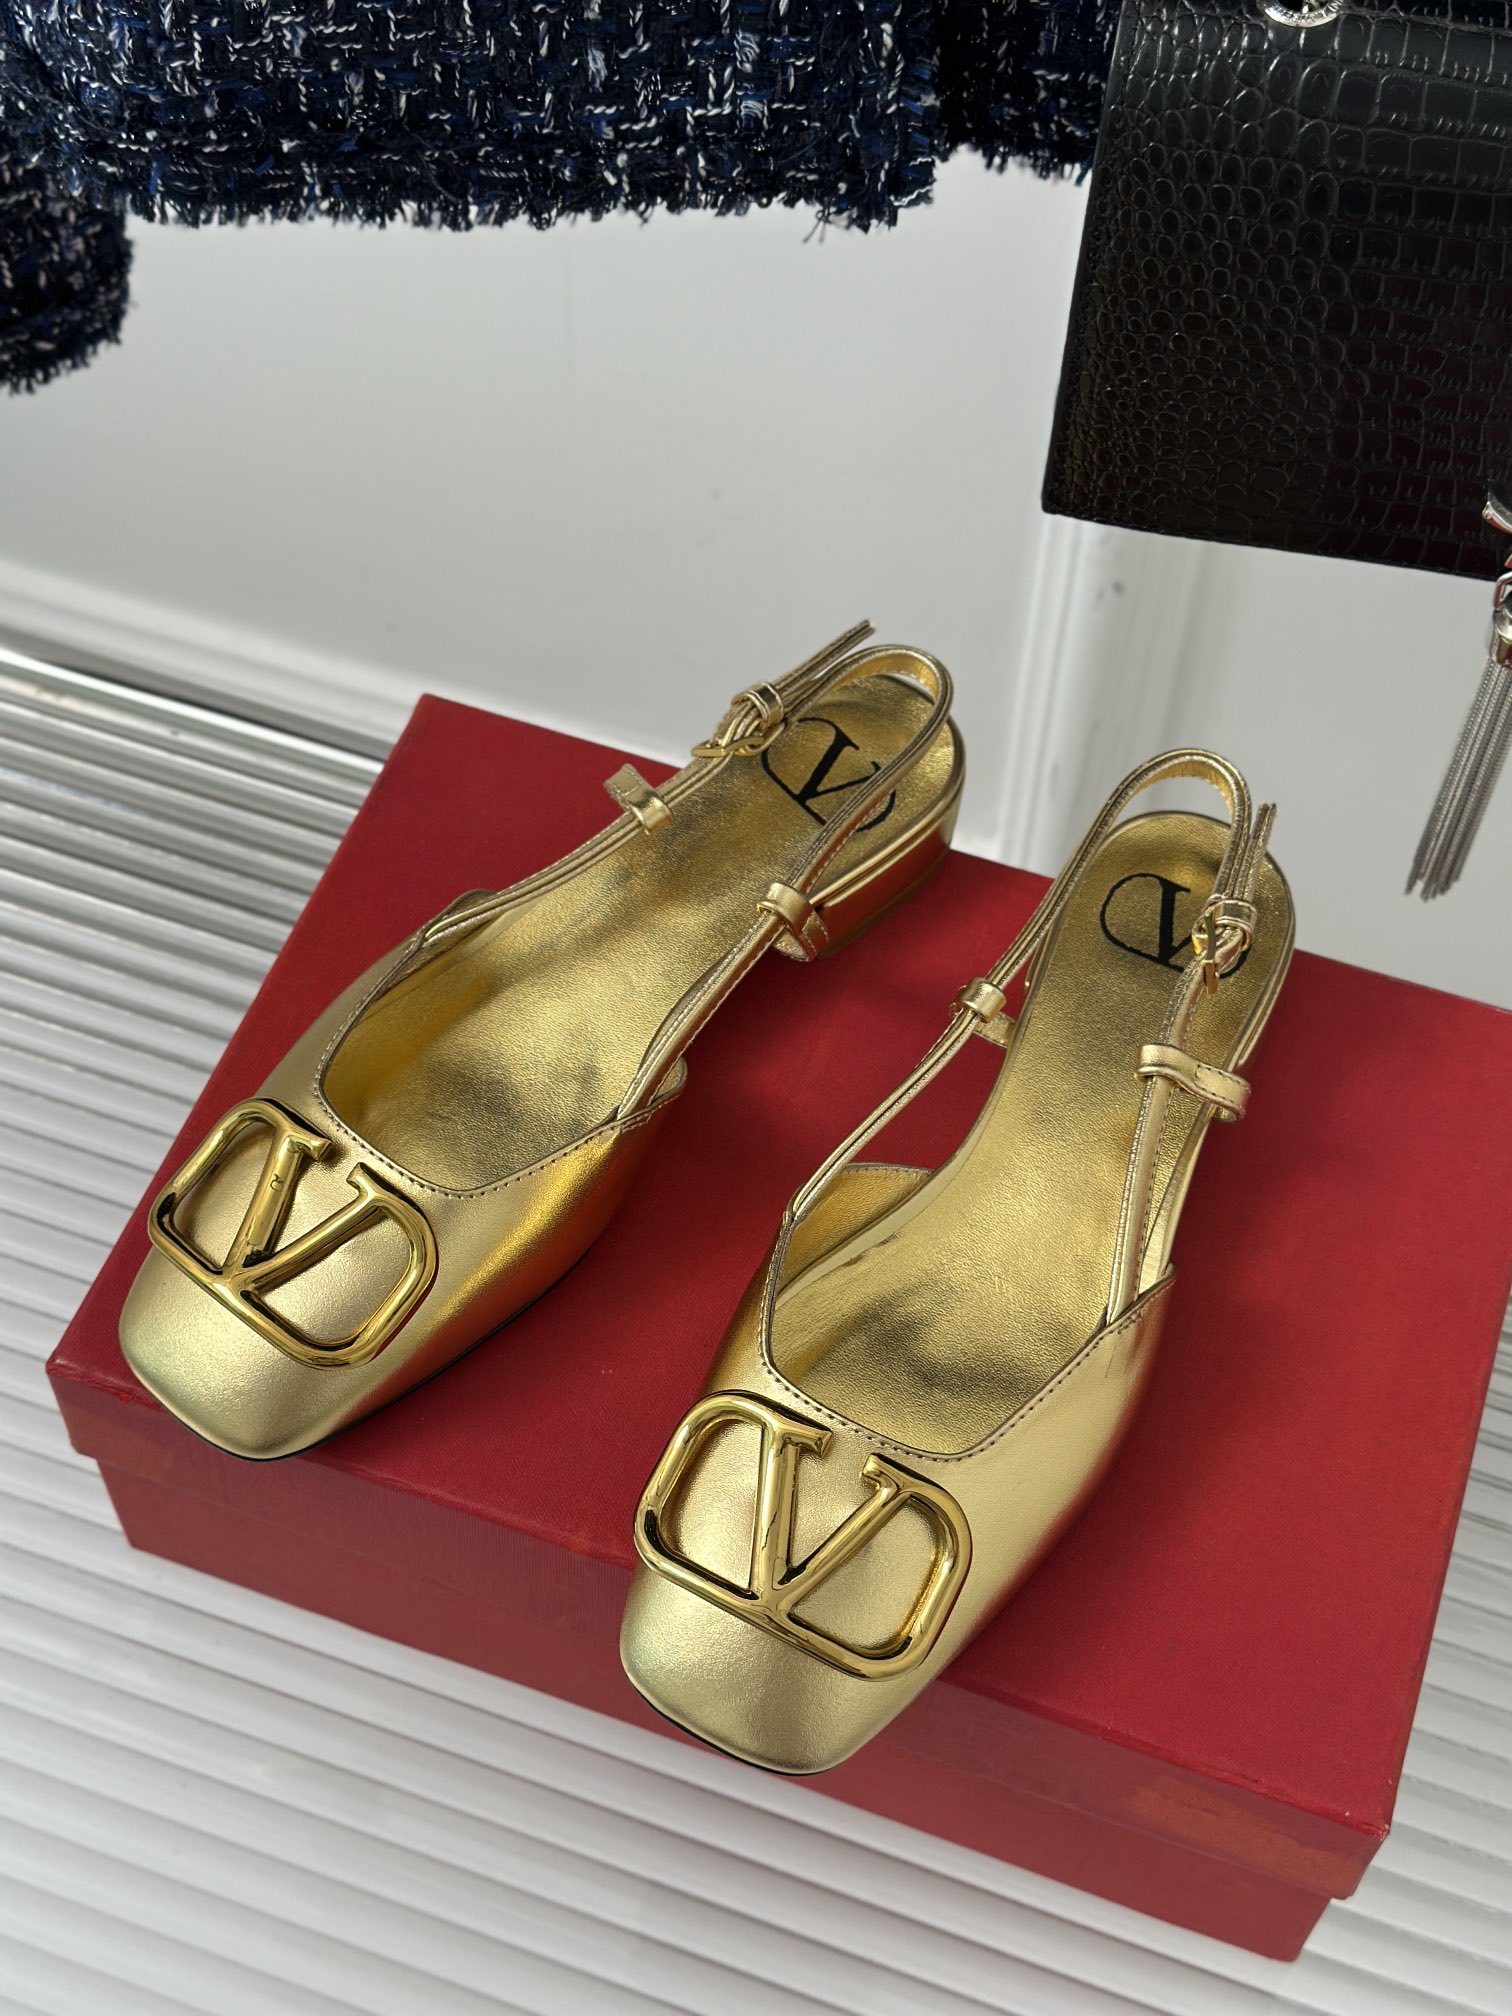 Valentin华伦天伦经典大V扣后空包头凉鞋️经典的大V扣元素设计搭配彰显了品牌独有的设计风格奢华时尚